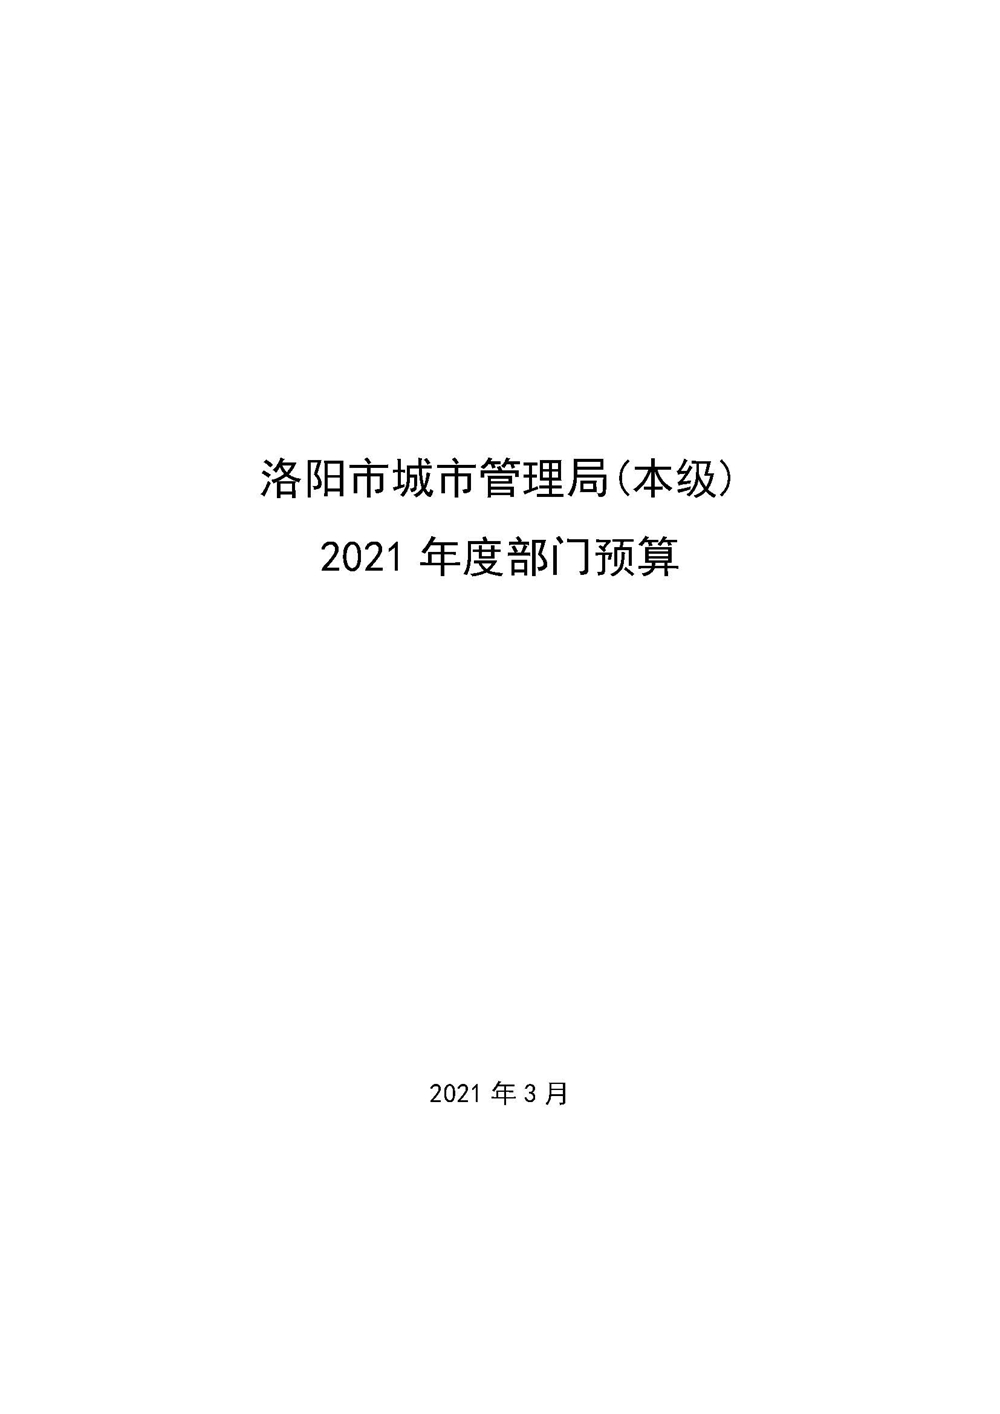 411001洛阳市城市管理局(本级）2021年度部门预算_页面_01.jpg